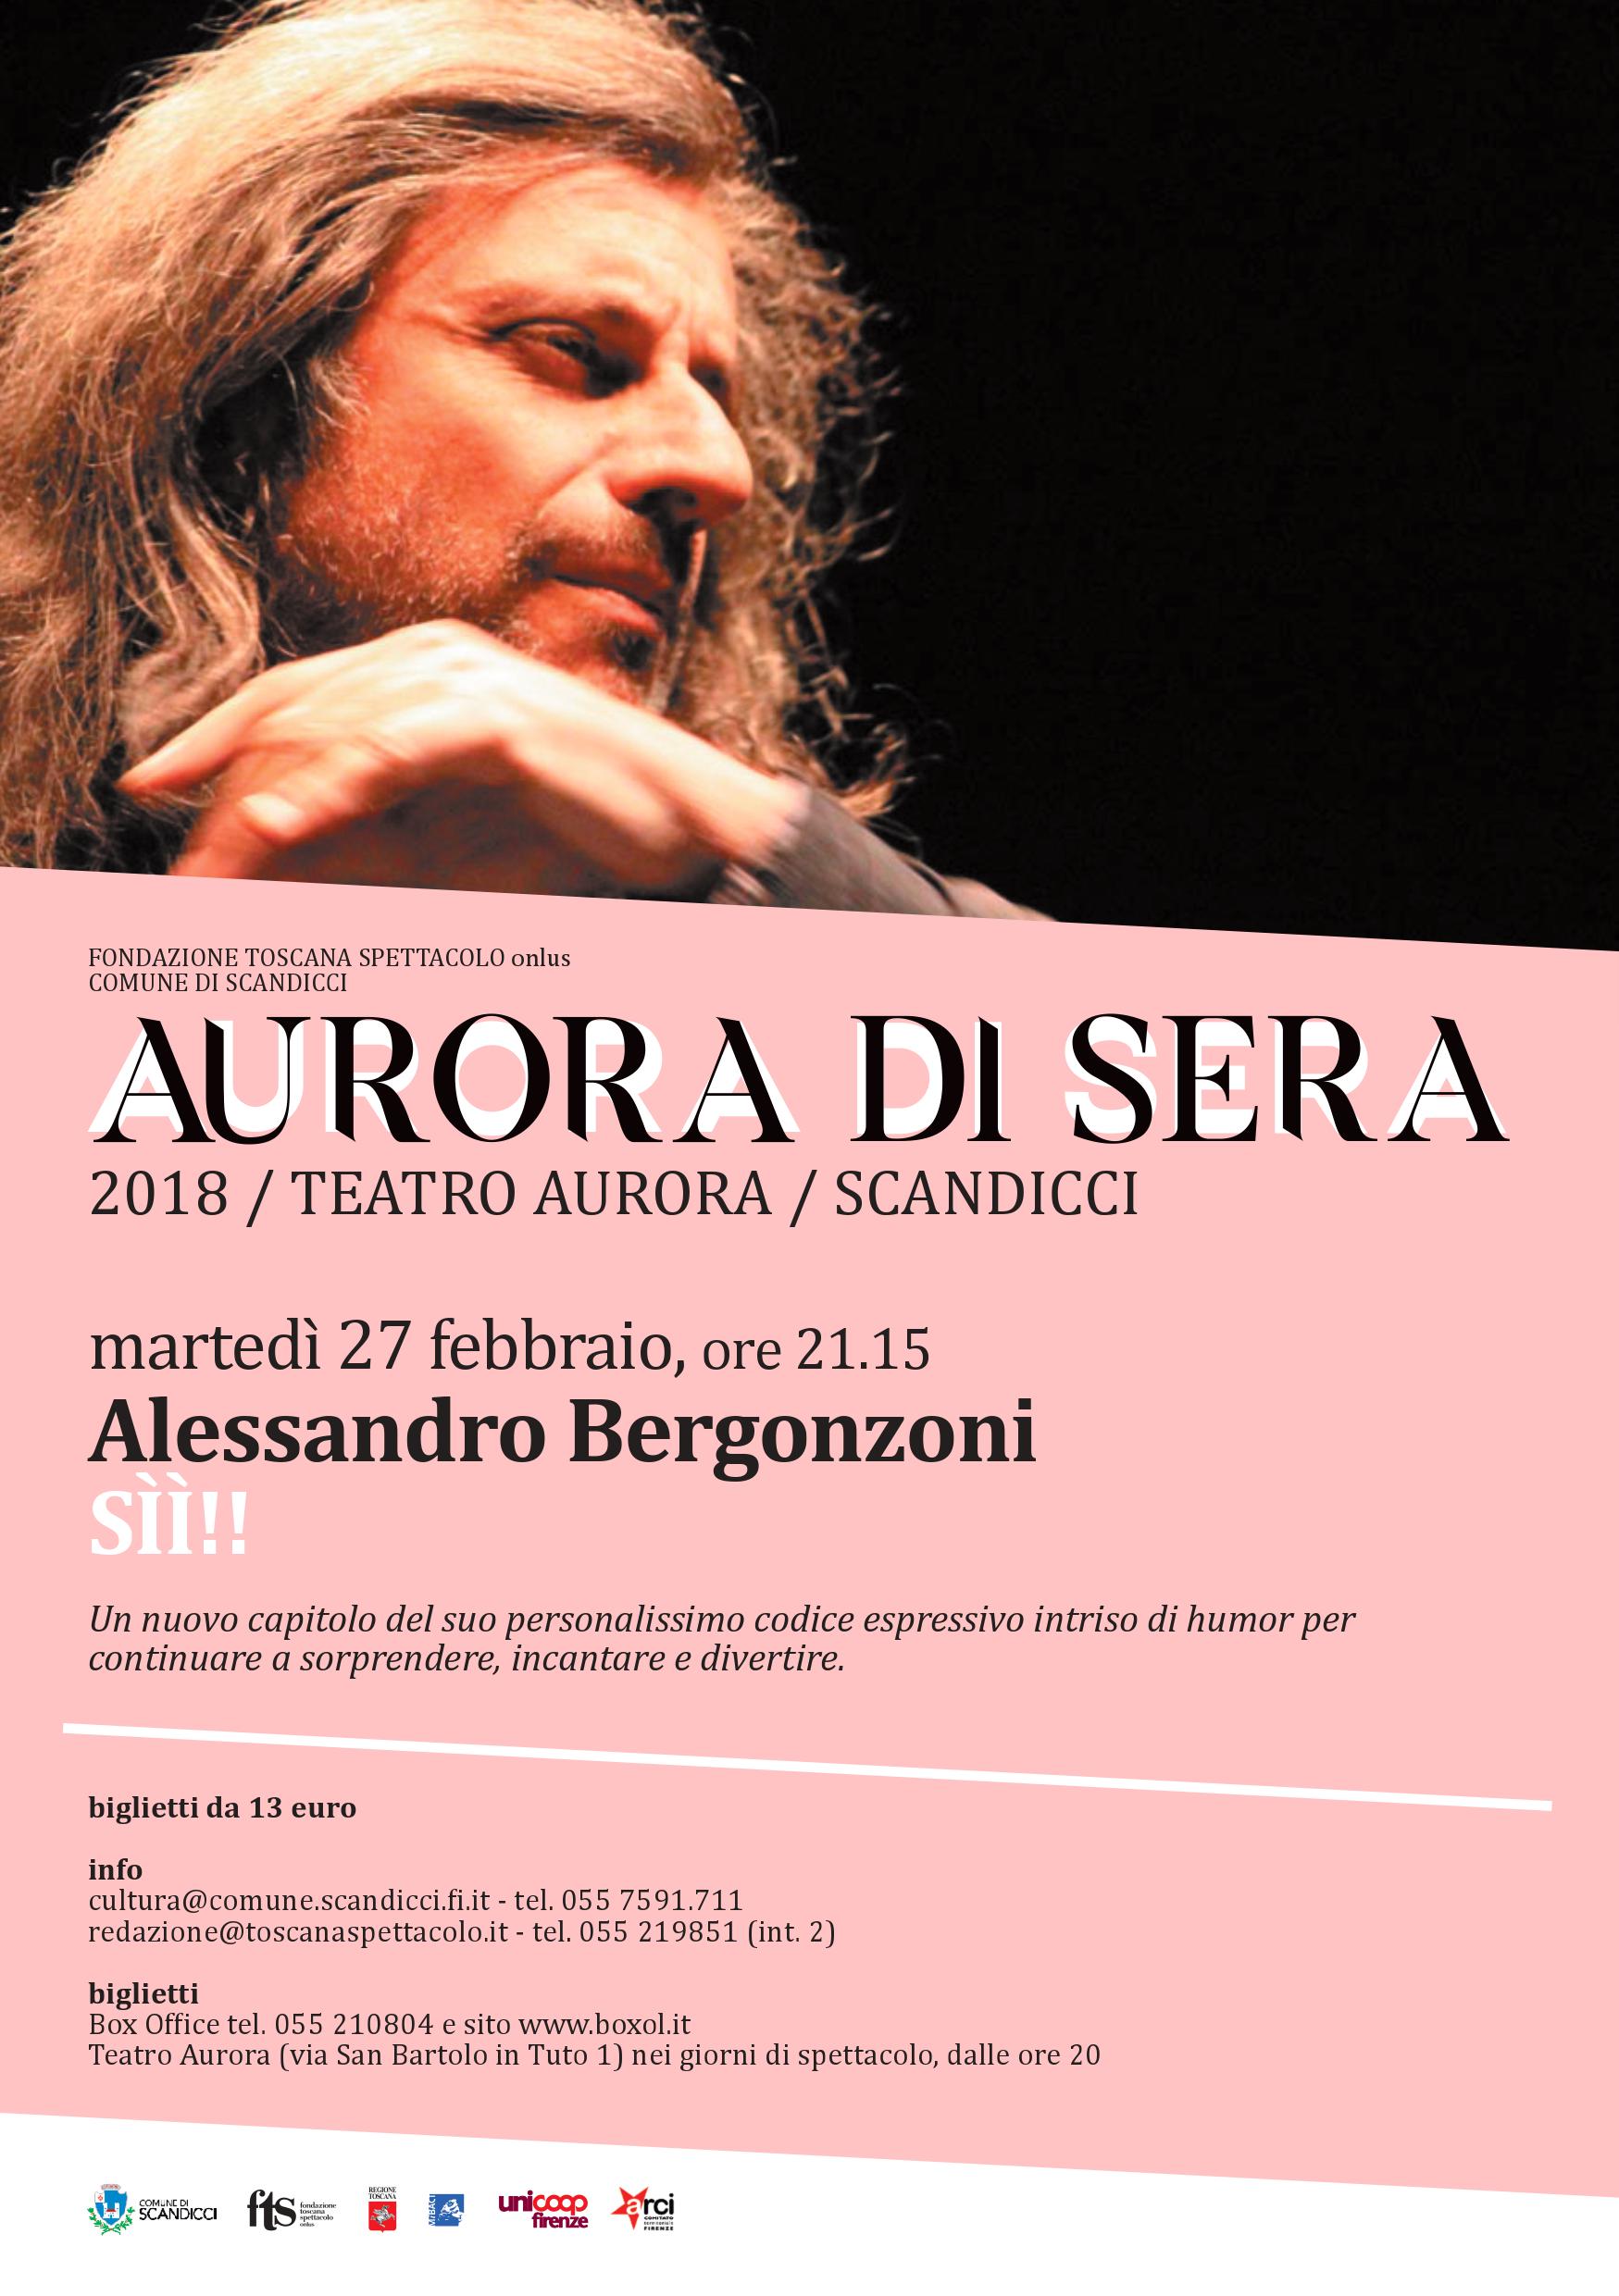 Scandicci. Teatro, per AuroradiSera Alessandro Bergonzoni con Sii